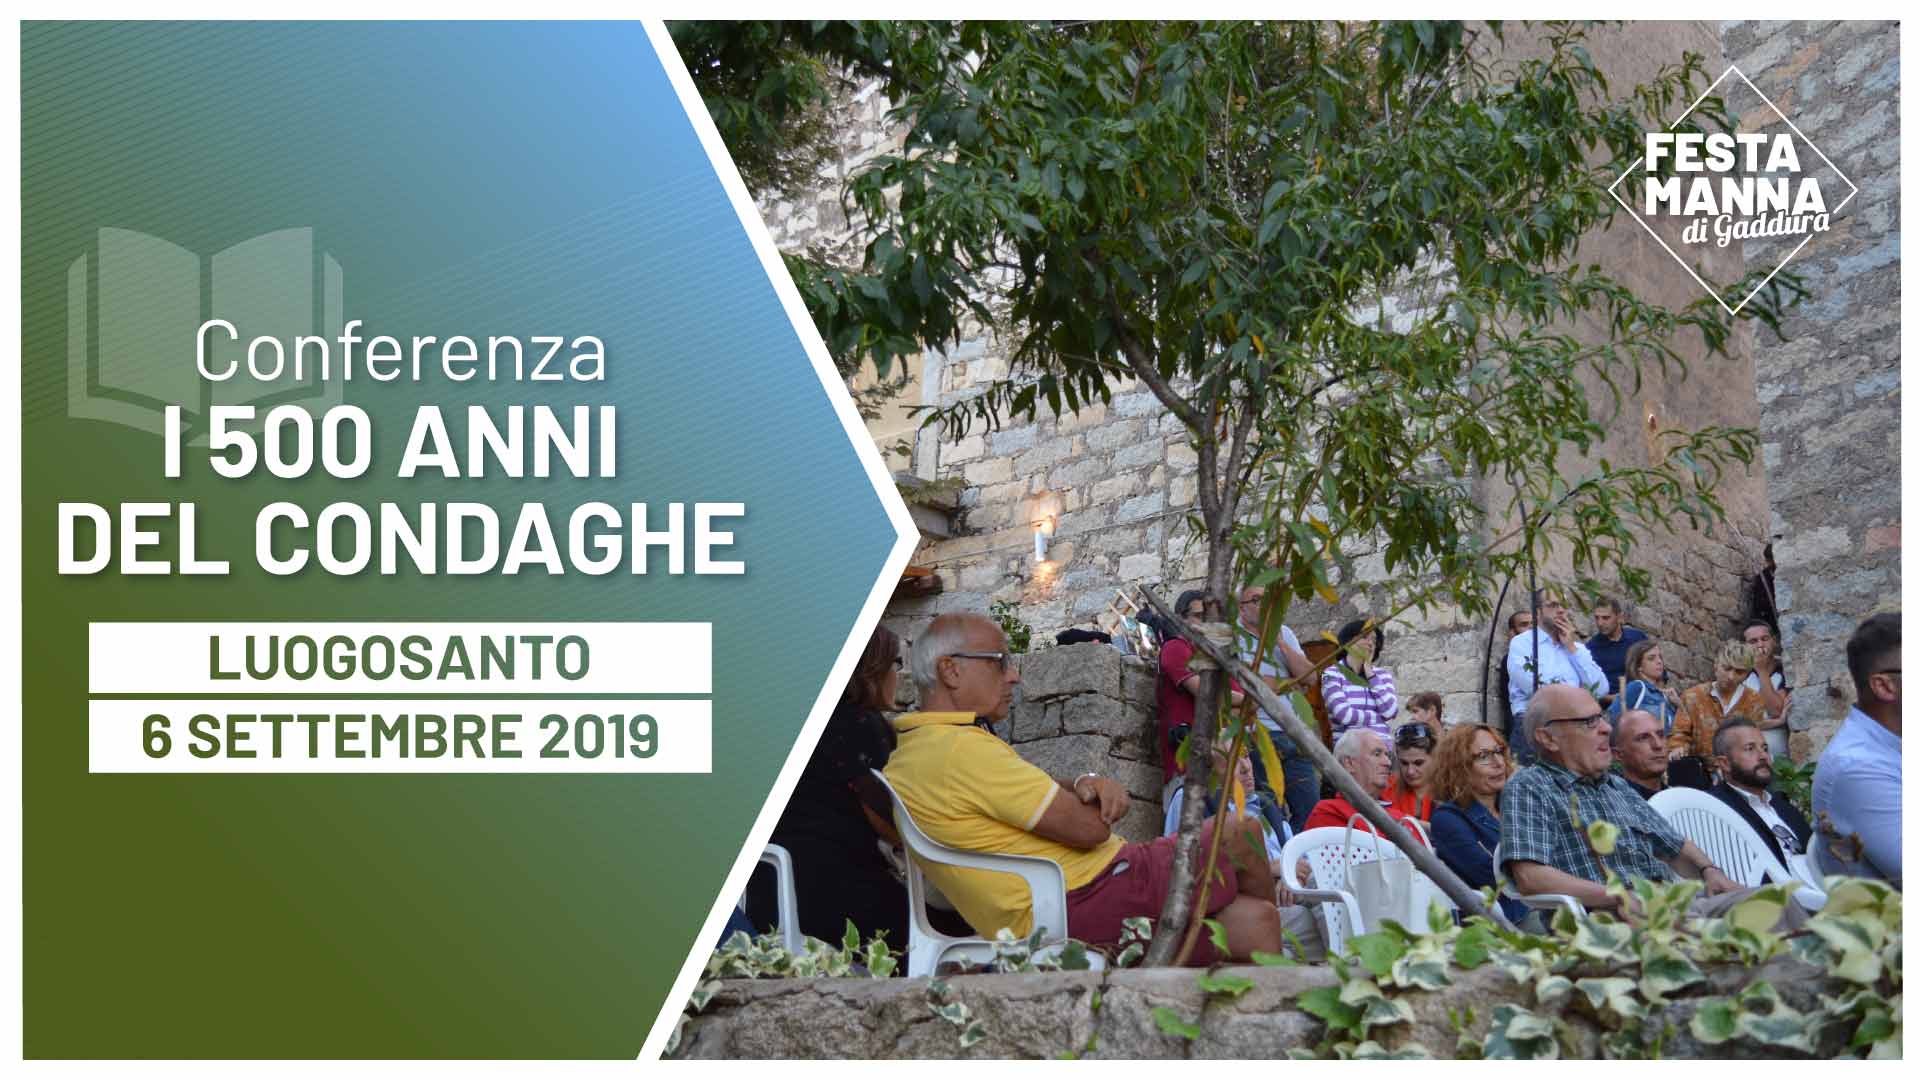 1519-2019: 500 years of the Condaghe of Luogosanto, conference with Graziano Fois, Mauro Maxia and Fabio Pinna | Festa Manna di Gaddura 2019